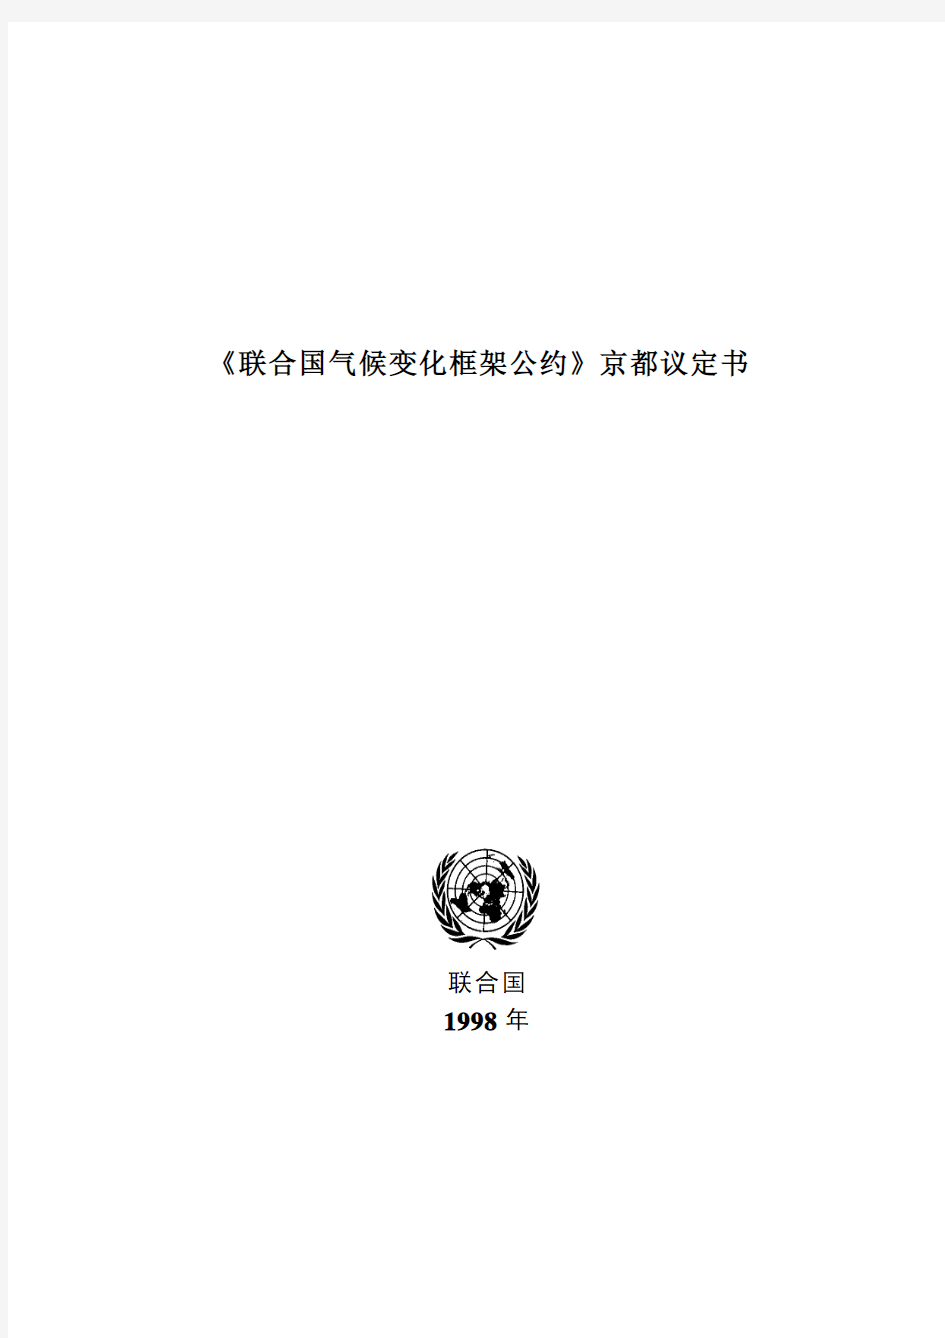 《联合国气候变化框架公约》京都议定书